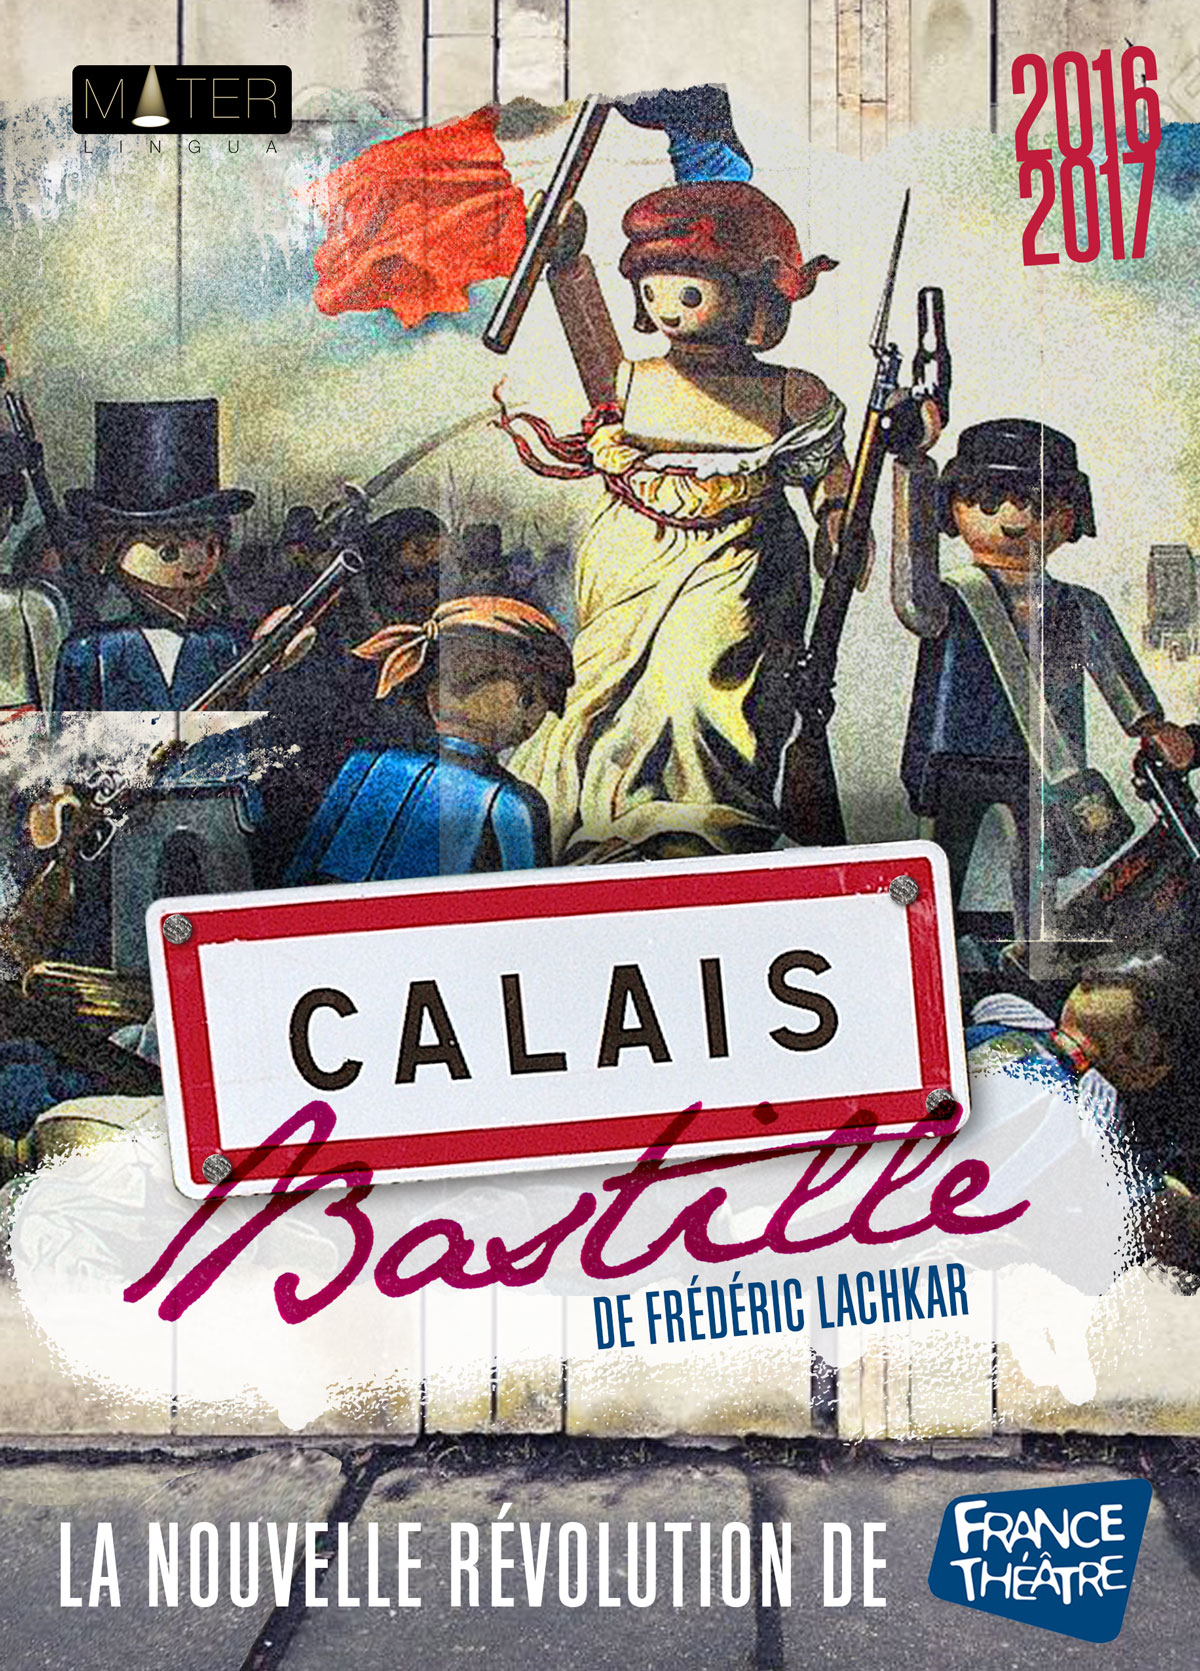 Calais Bastille Dipinto New 16.57.55